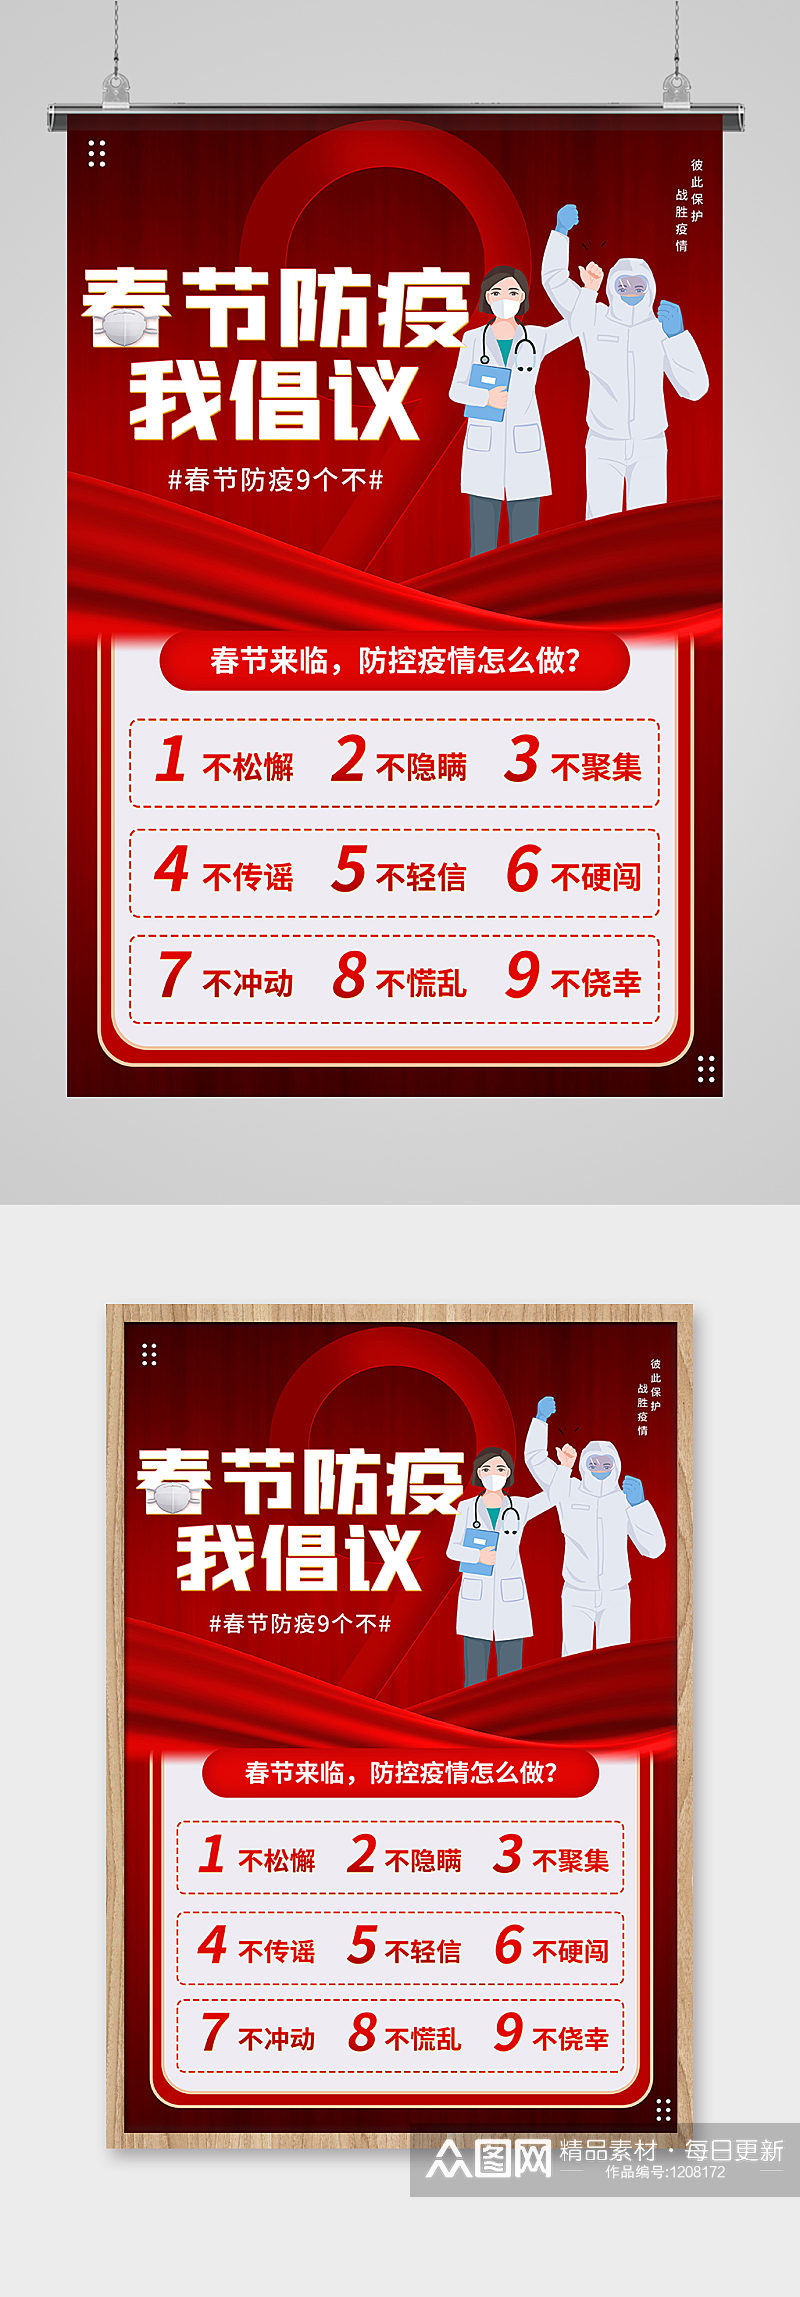 红色春节抗疫27字倡议公益宣传海报素材